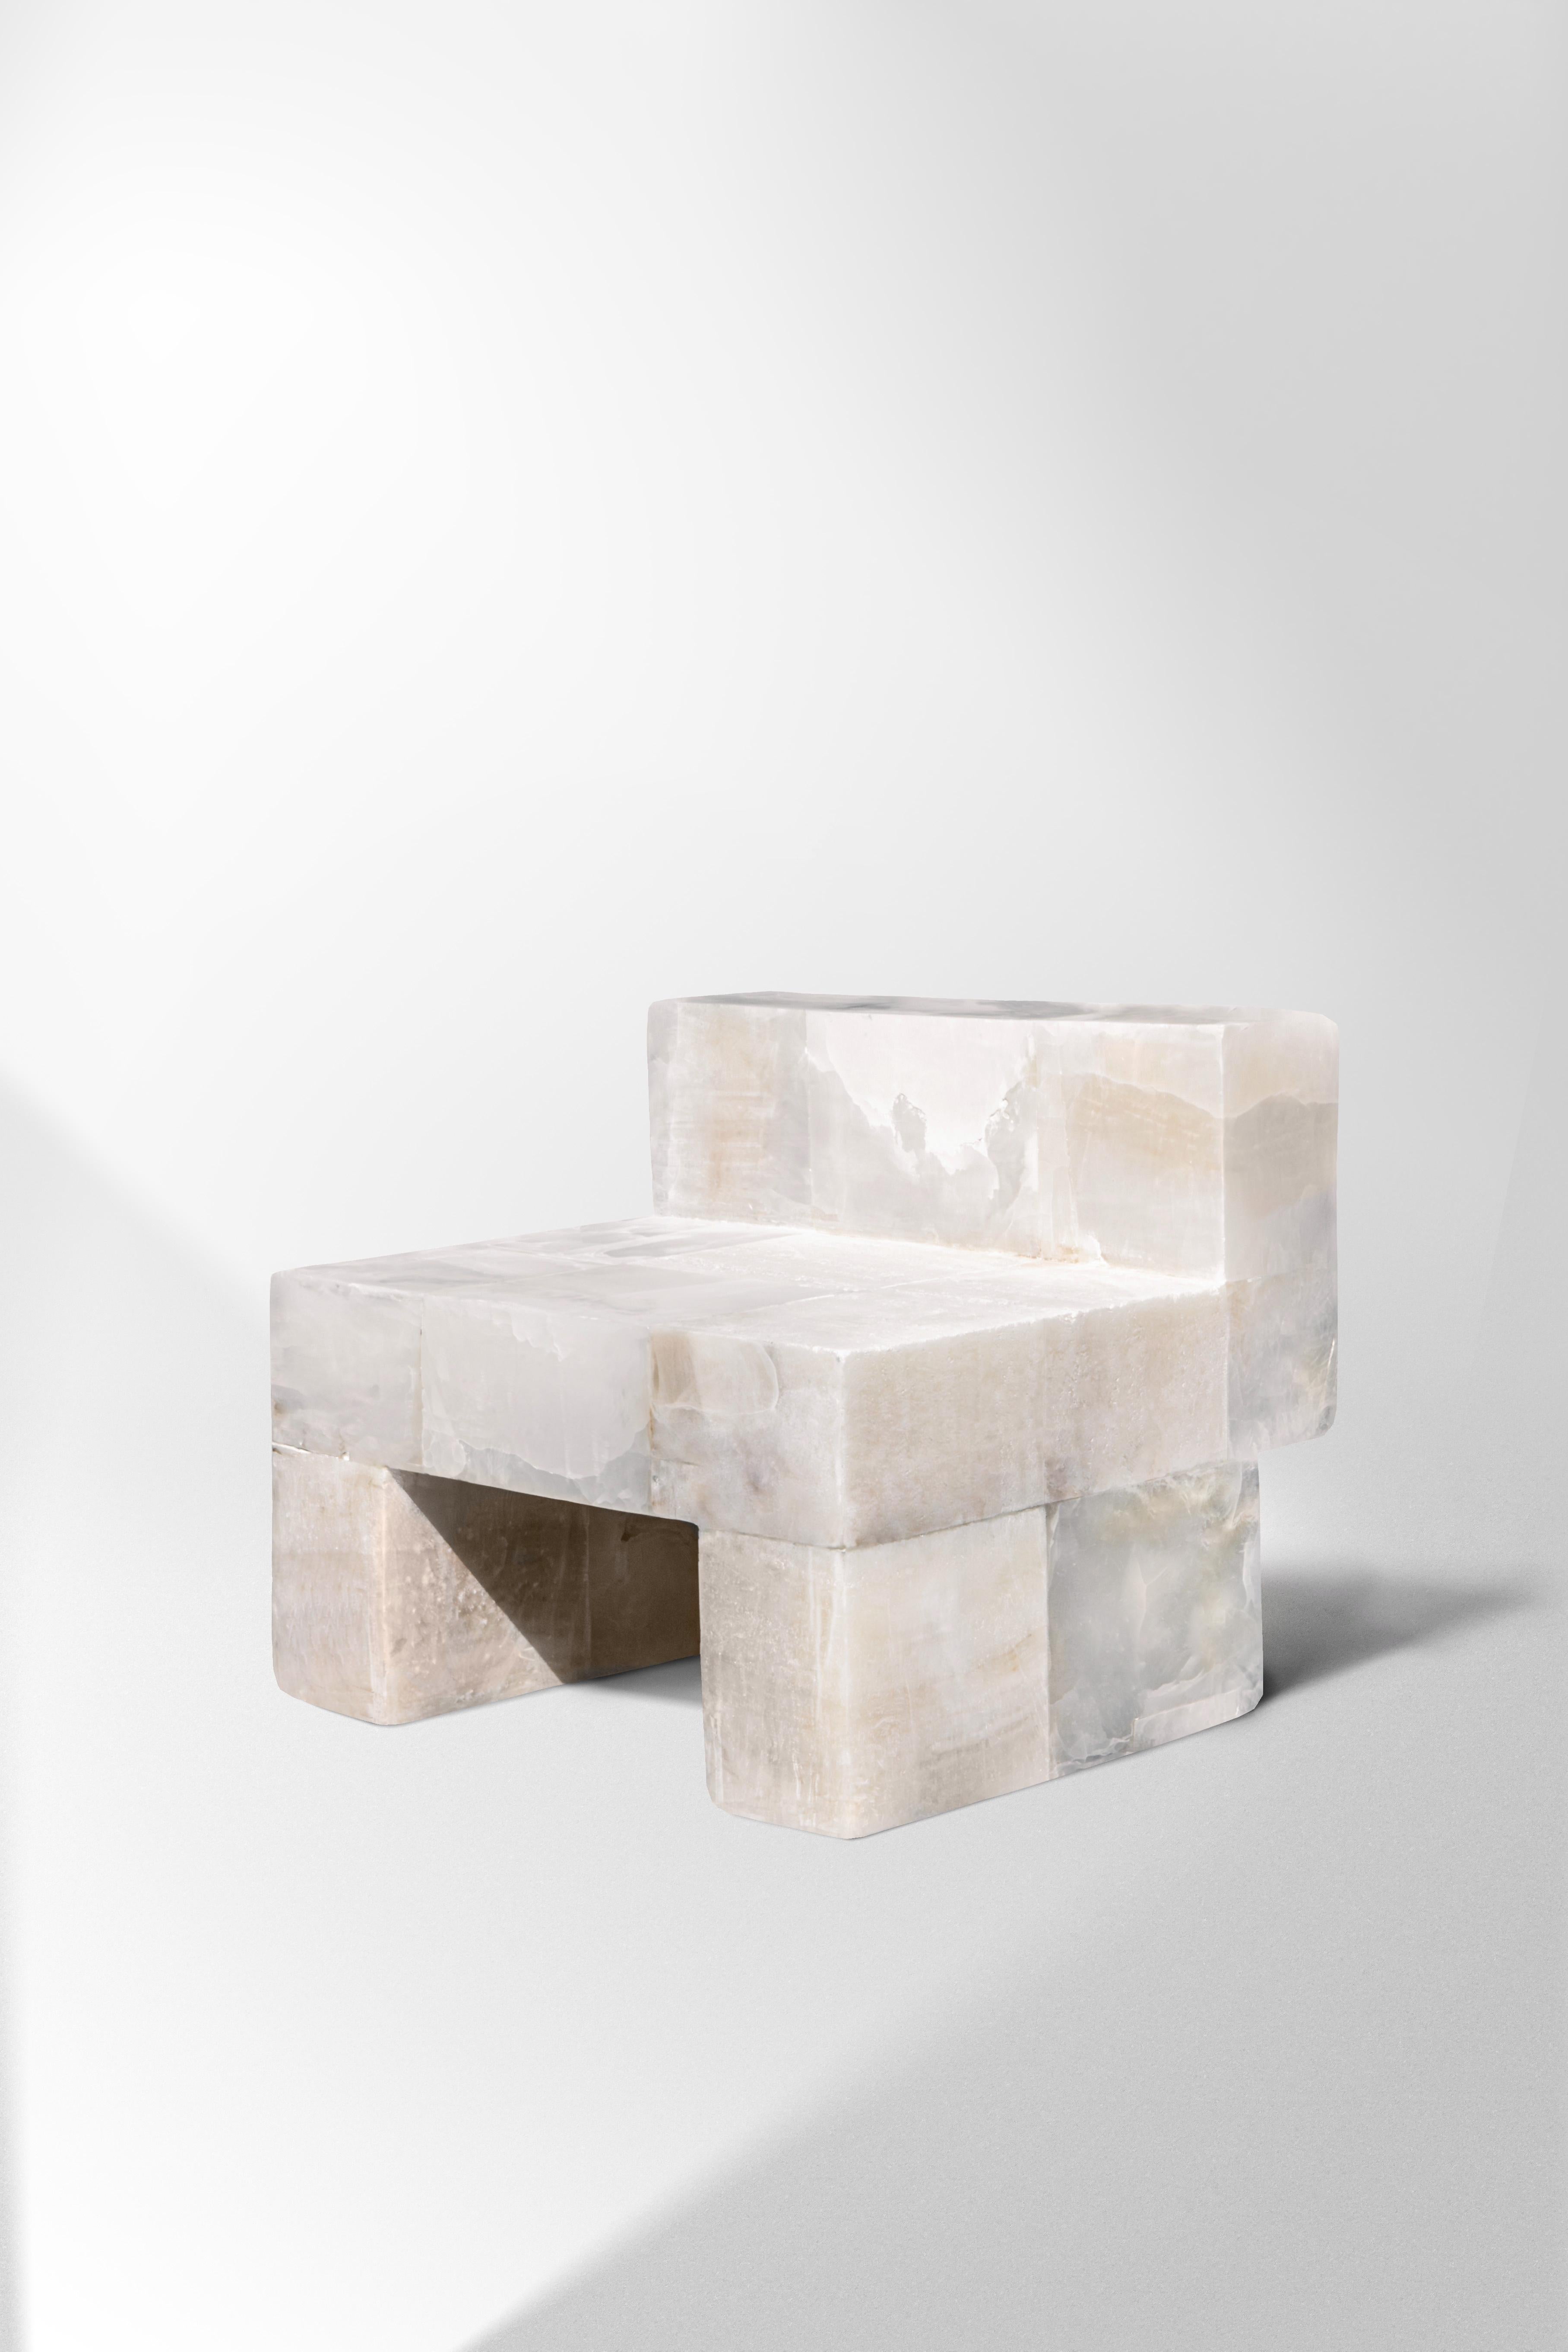 Zuckerhut-Daddy-Stuhl aus weißem Onyx von Pietro Franceschini
Limitierte Auflage von 8 Exemplaren.
Abmessungen: T 59 x B 55 x H 50,5 cm.
MATERIALIEN: Weißer Onyx.

Pietro Franceschini ist ein in New York und Florenz ansässiger Architekt und